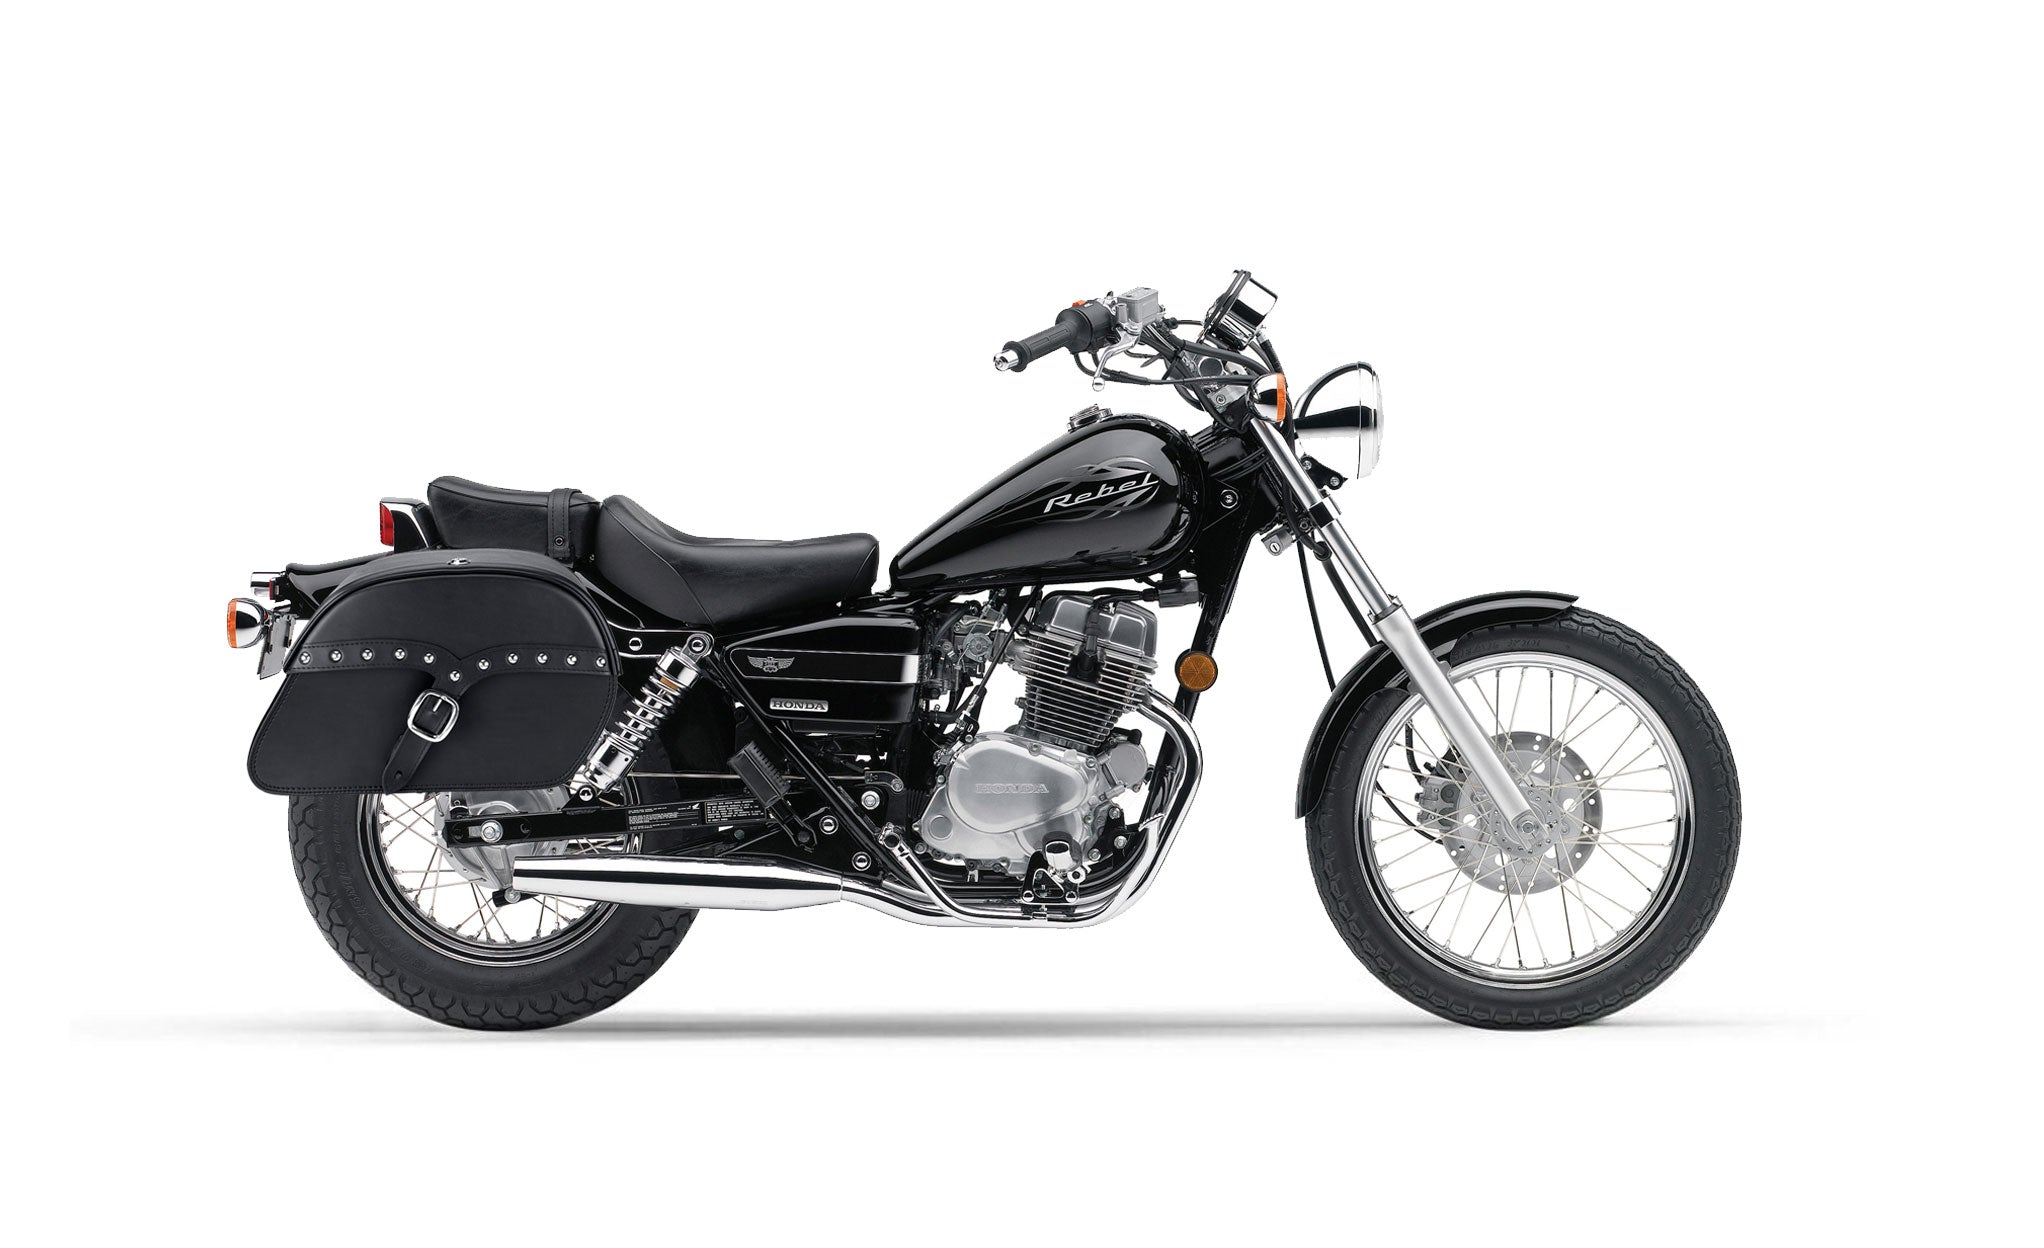 Viking Vintage Single Strap Large Honda Rebel 250 Leather Studded Motorcycle Saddlebags on Bike Photo @expand